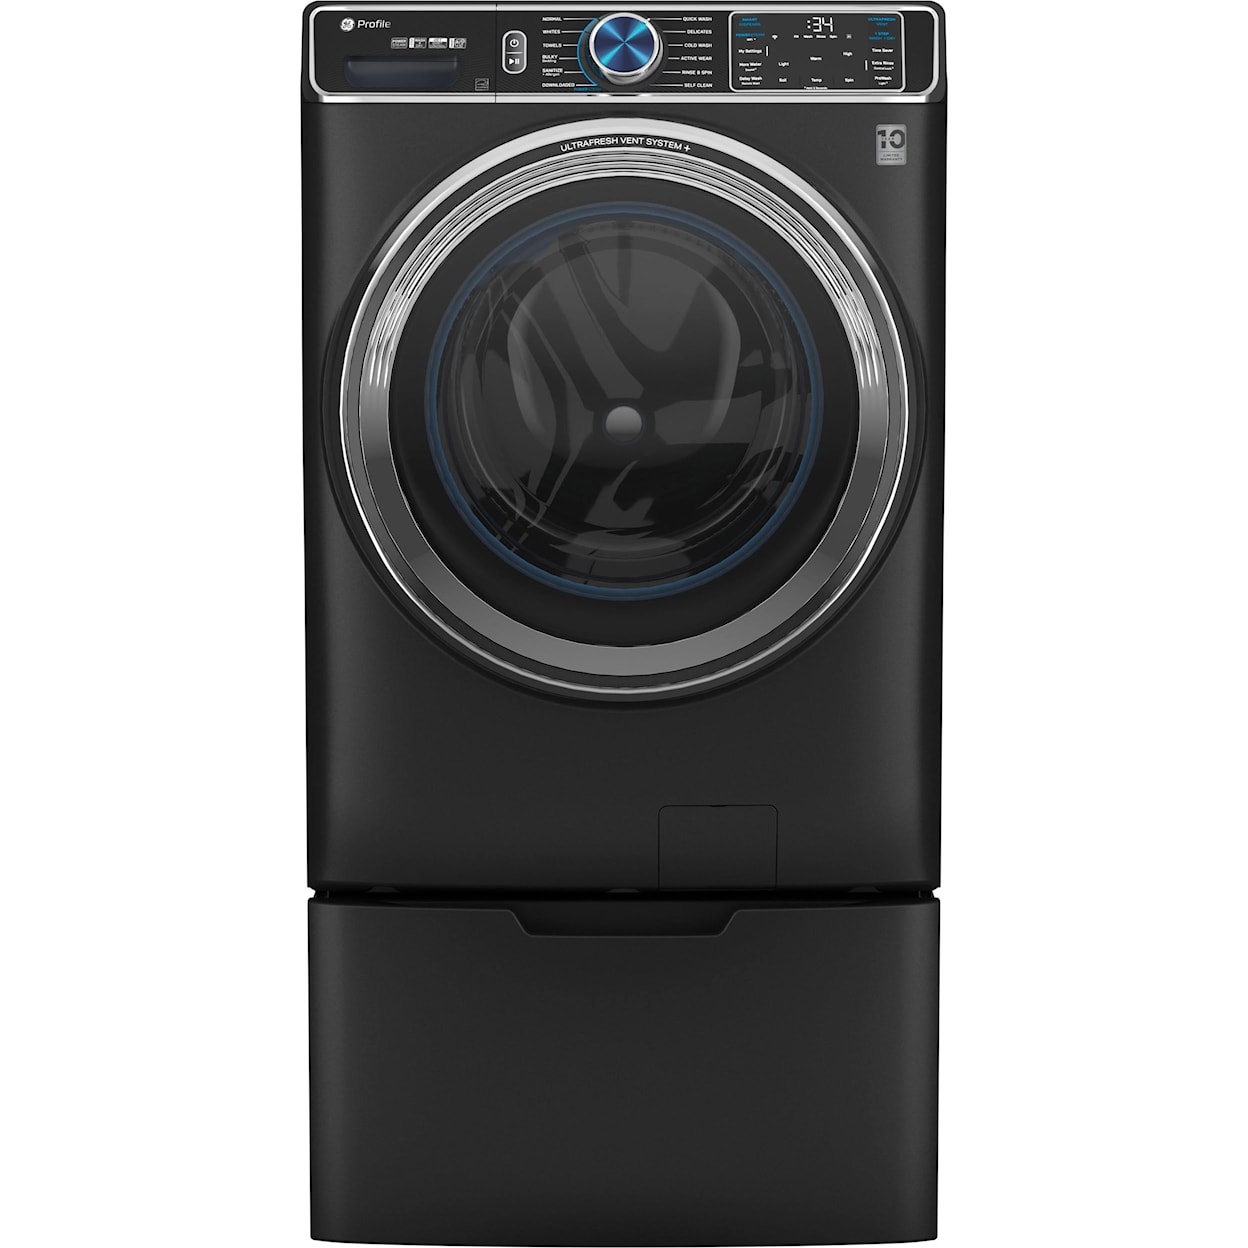 GE Appliances Laundry Laundry Pedestals